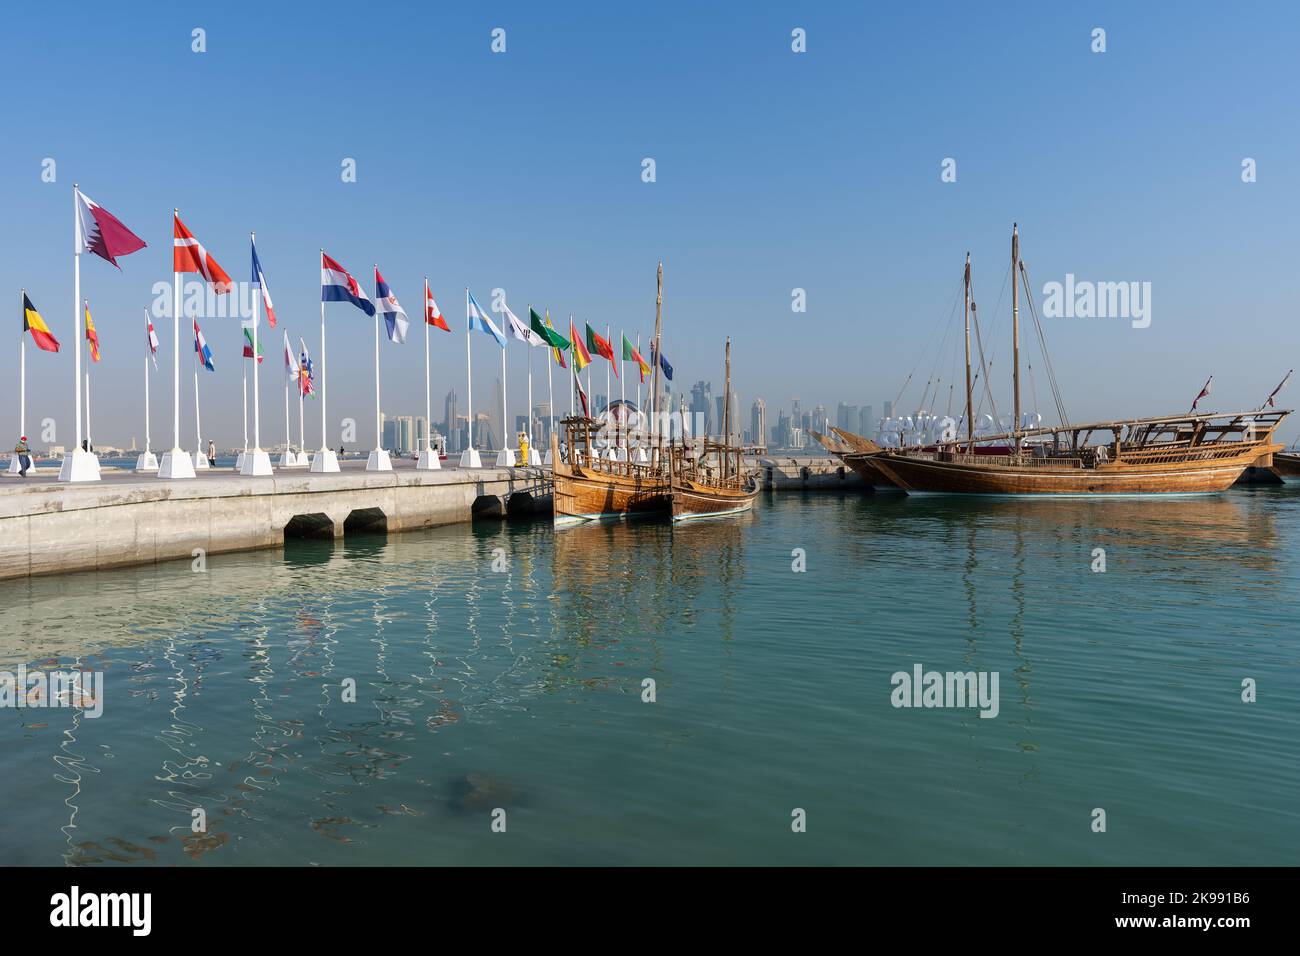 Bandiere di nazioni qualificate per la Coppa del mondo Qatar 2022 issate a Doha Corniche, Qatar, Medio Oriente. Foto Stock